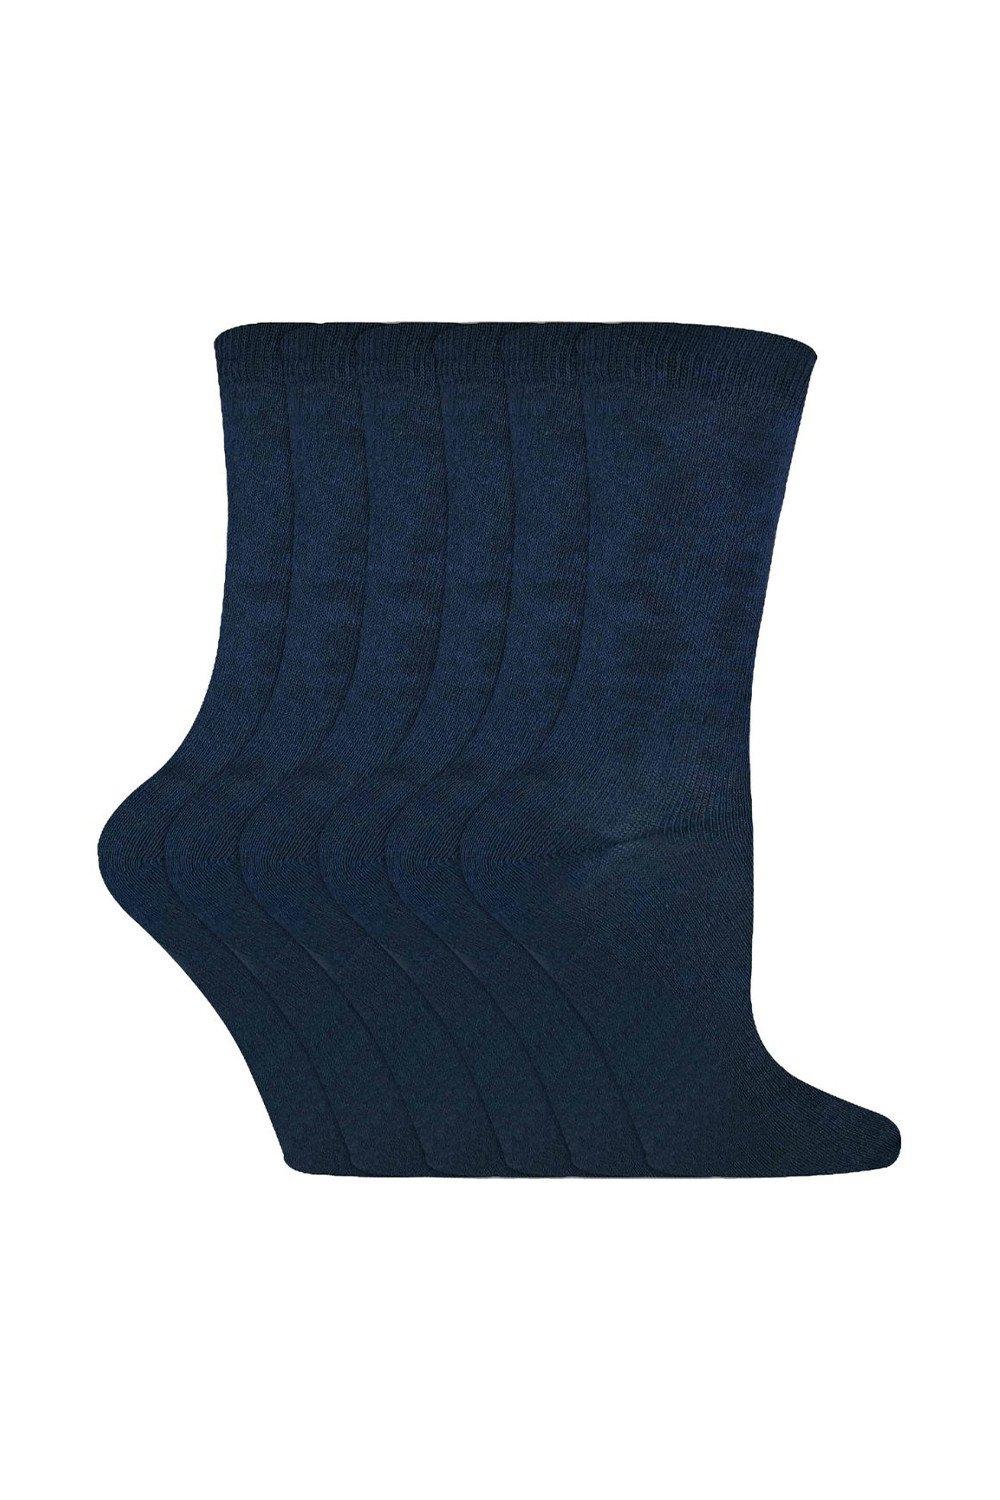 6 пар однотонных повседневных хлопковых носков Sock Snob, синий